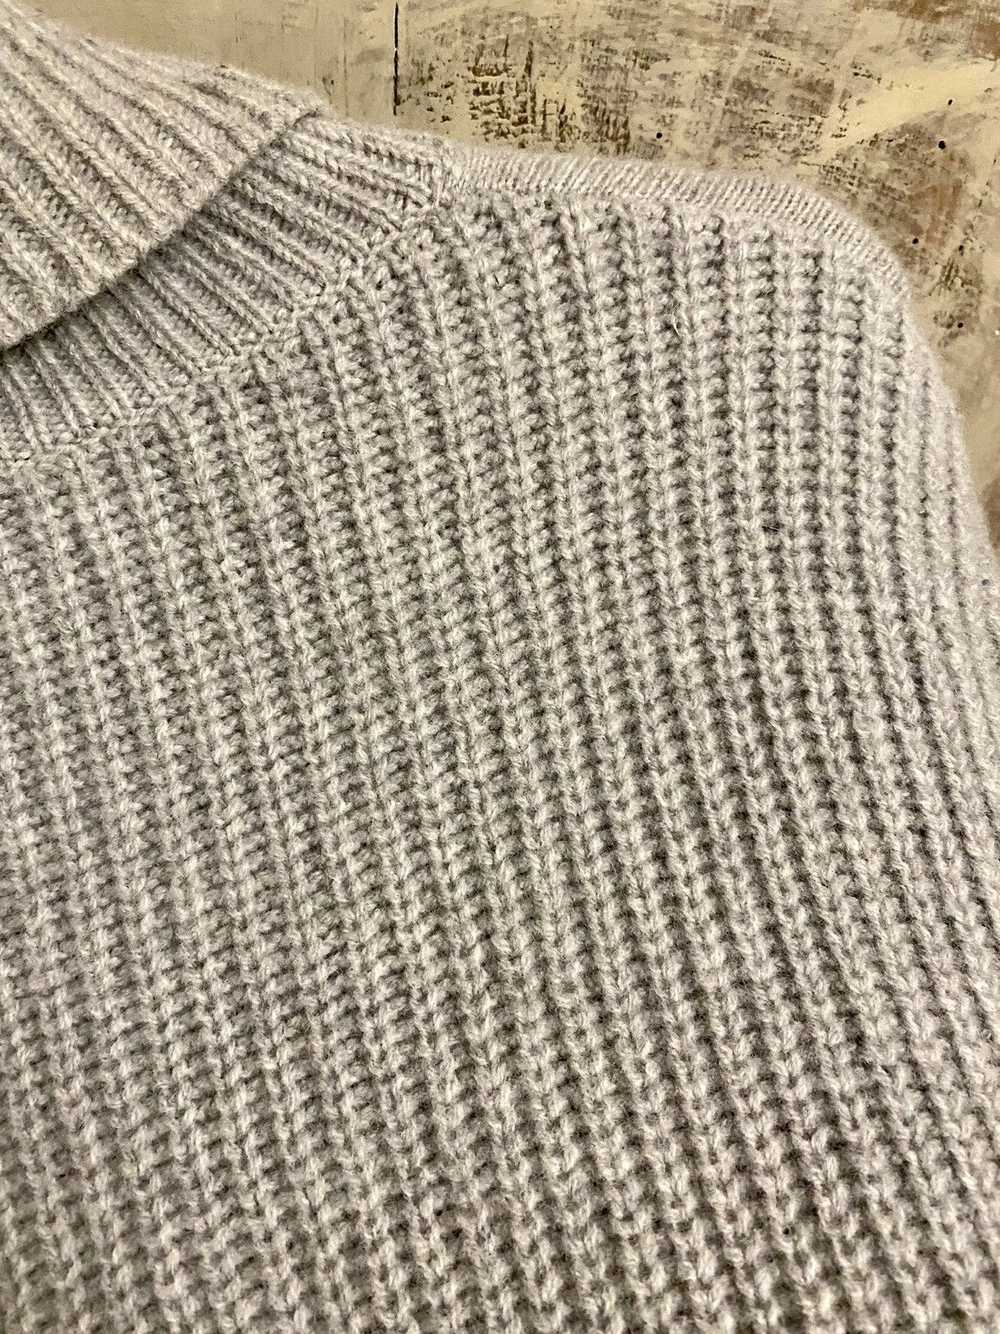 AMI Ami bi textured knit jumper gris wool M - image 7